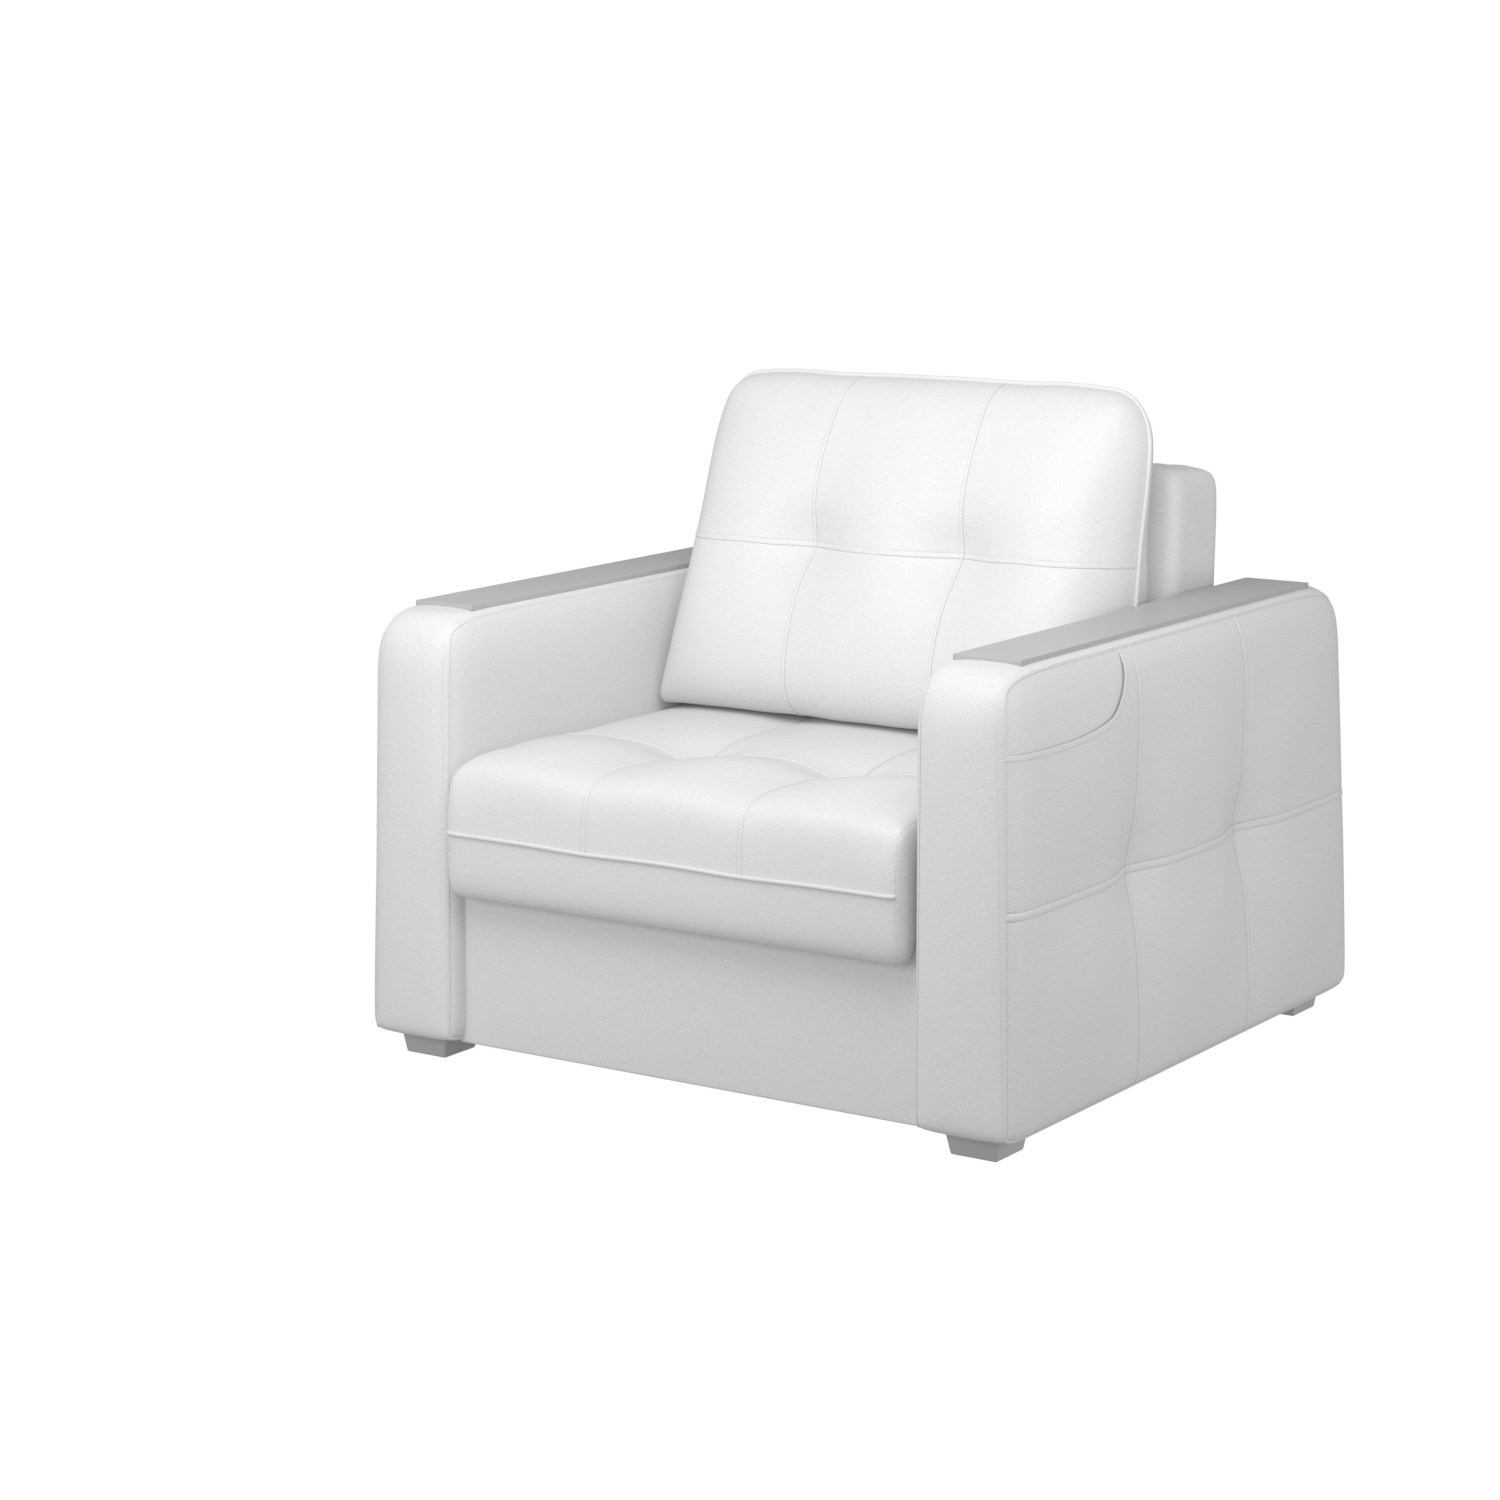 Мягкое кресло с ящиком Киль-3, кКЛ01.вл26.26у